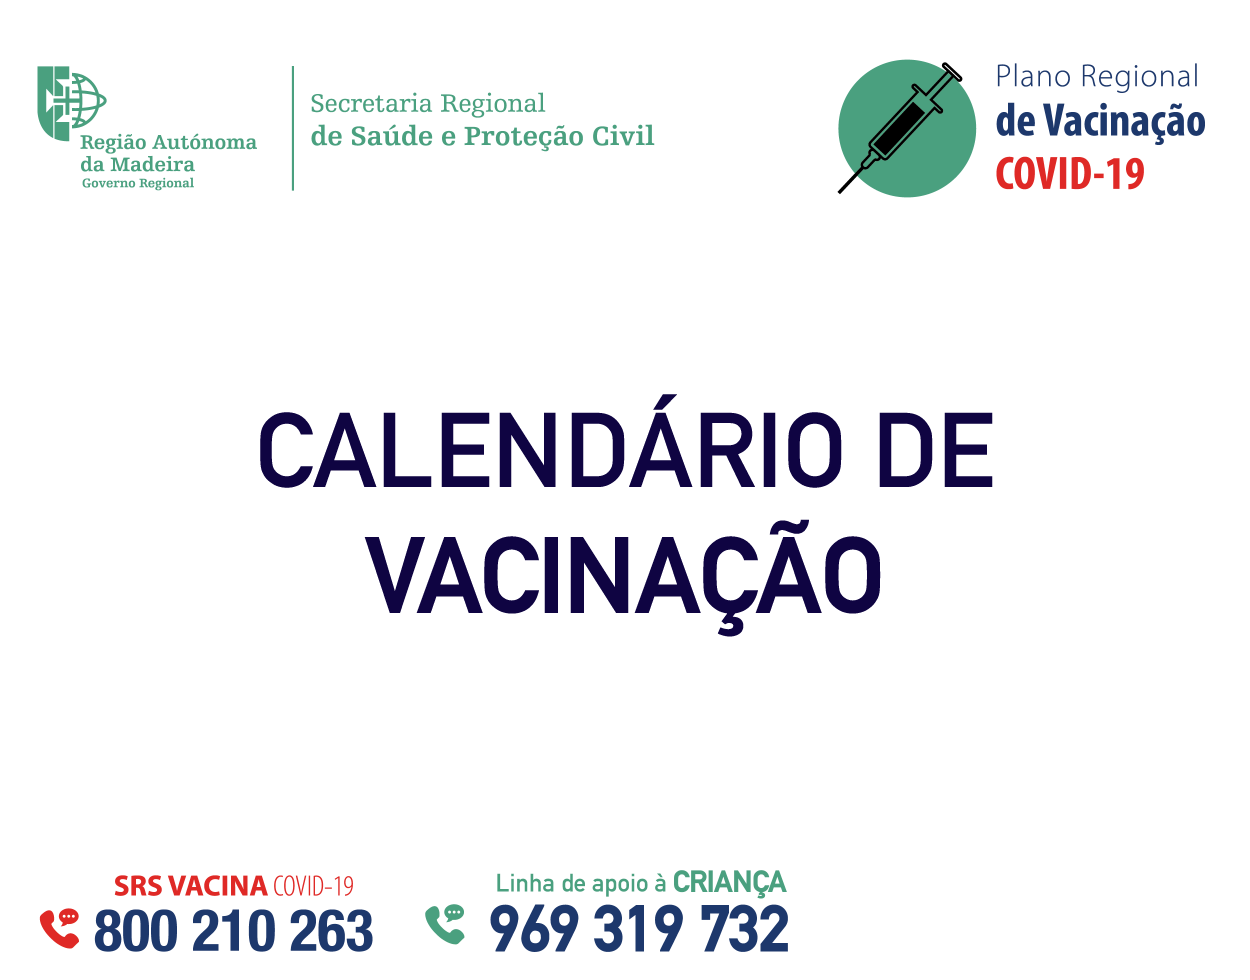 “Porta aberta” vacinação COVID-19 no Centro de Vacinação do Funchal